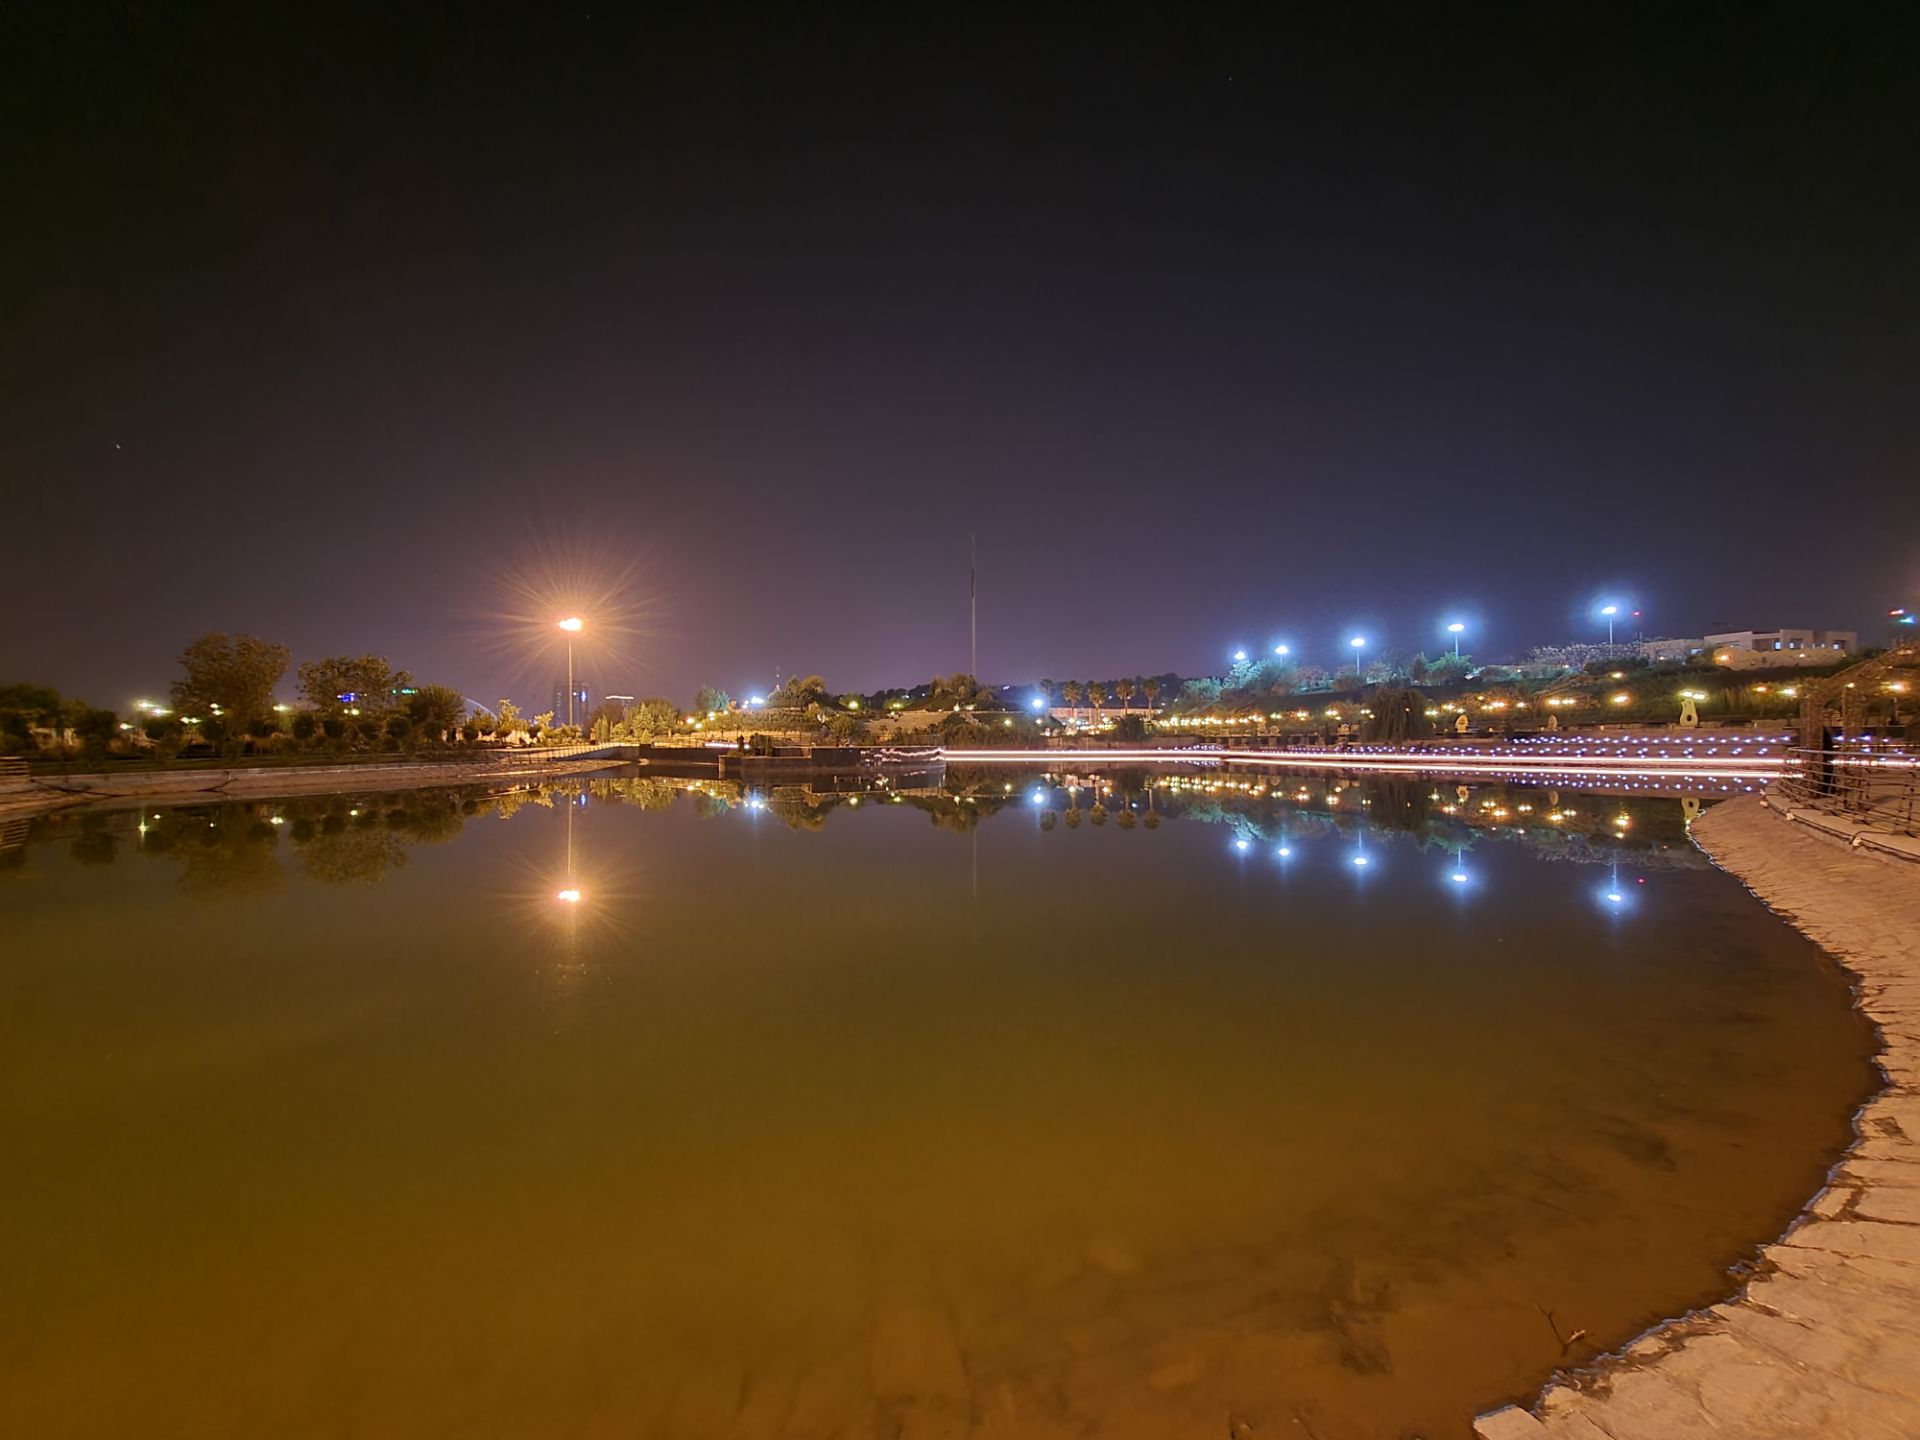 نمونه عکس اولتراواید گلکسی زد فولد ۲ در تاریکی - دریاچه مصنوعی باغ کتاب تهران